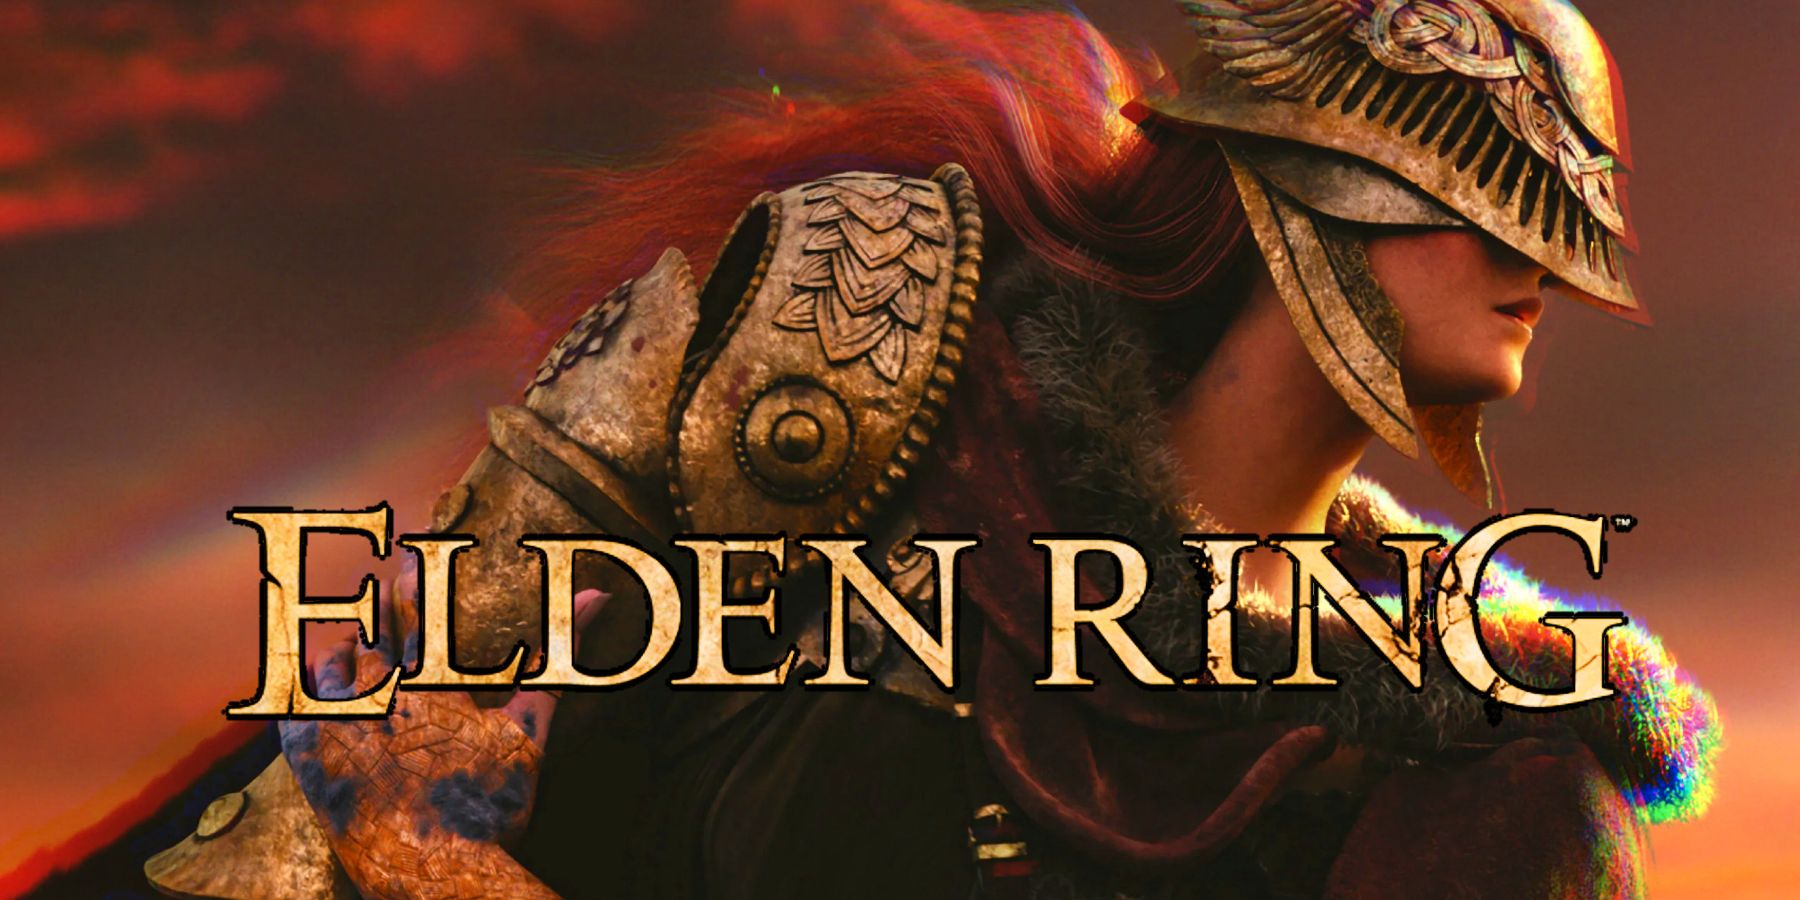 Фанат Elden Ring сделал потрясающую обложку для игры, вдохновленной старыми книгами фэнтези